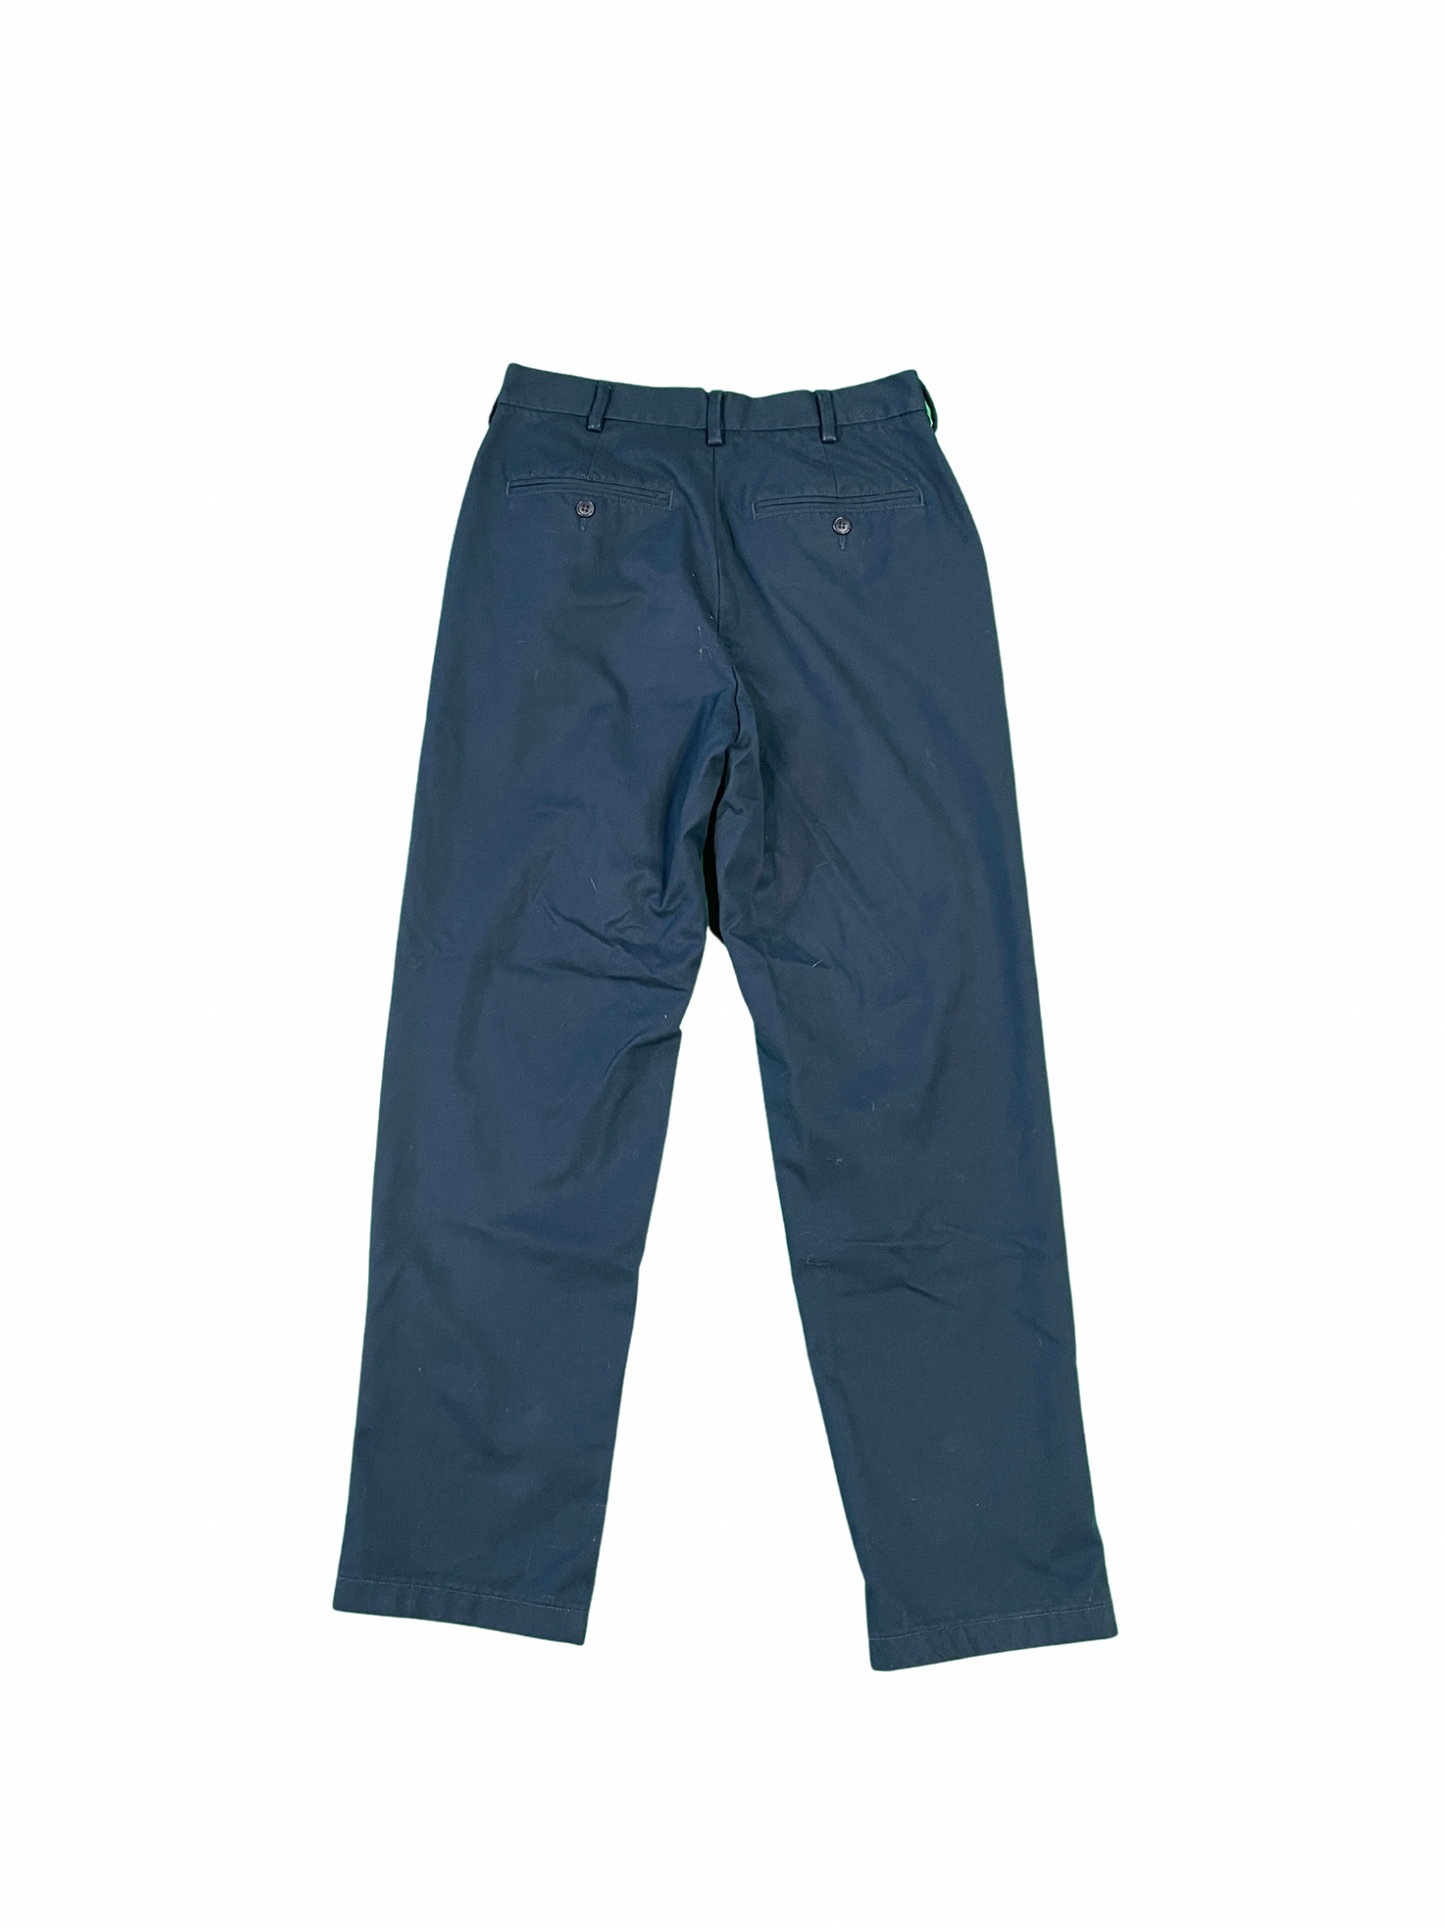 Navy Blue Khaki Pants